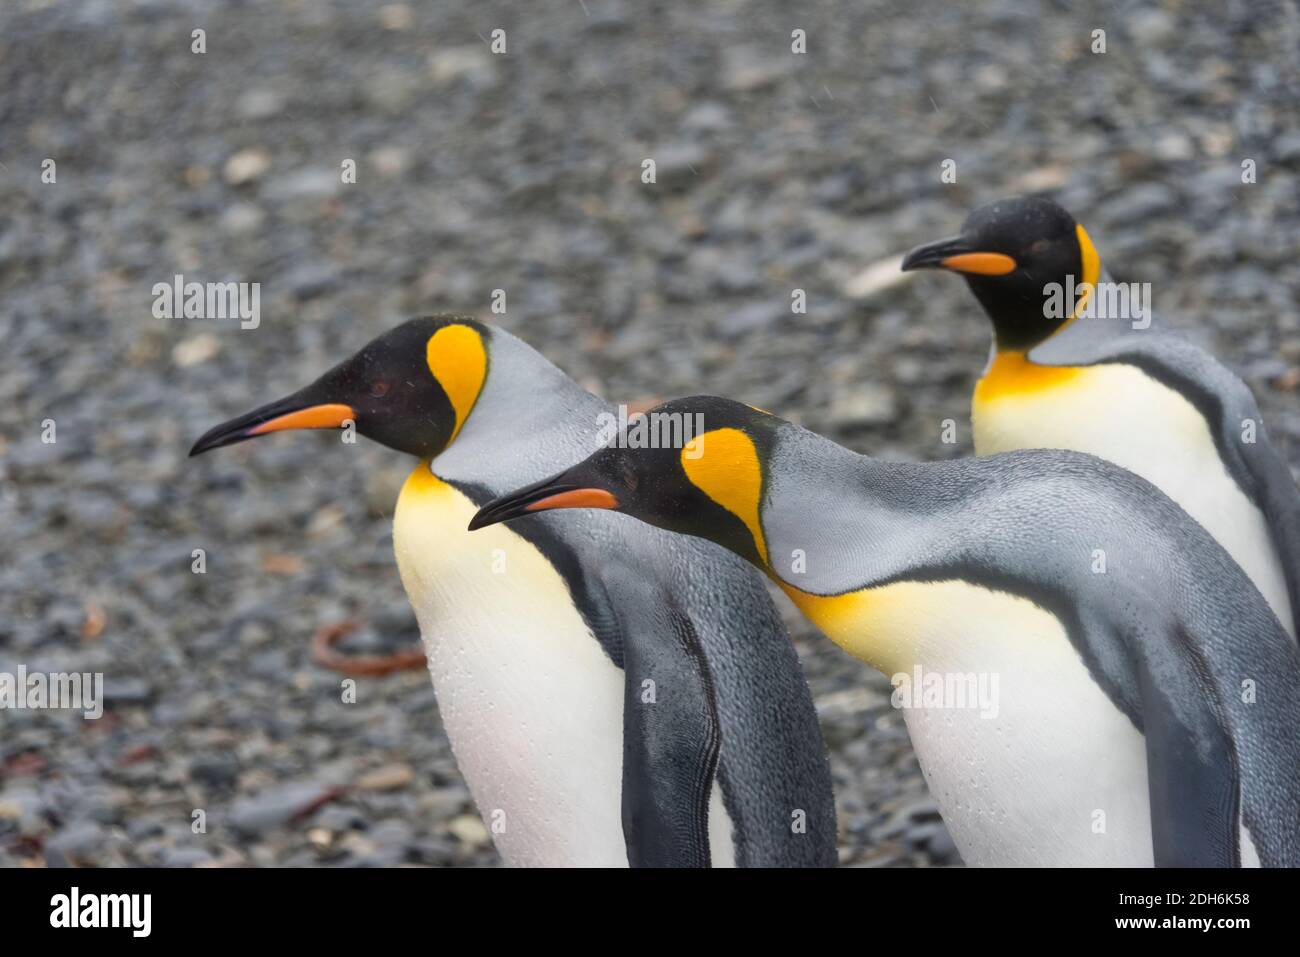 Pinguini re sull'isola, Fortuna Bay, Georgia del Sud, Antartide Foto Stock